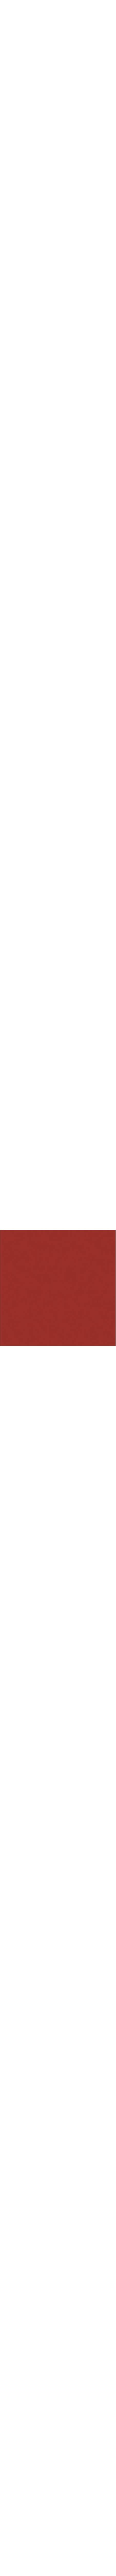 80.176 Rouge géranium en 0.61m (référence arrêtée) prix net